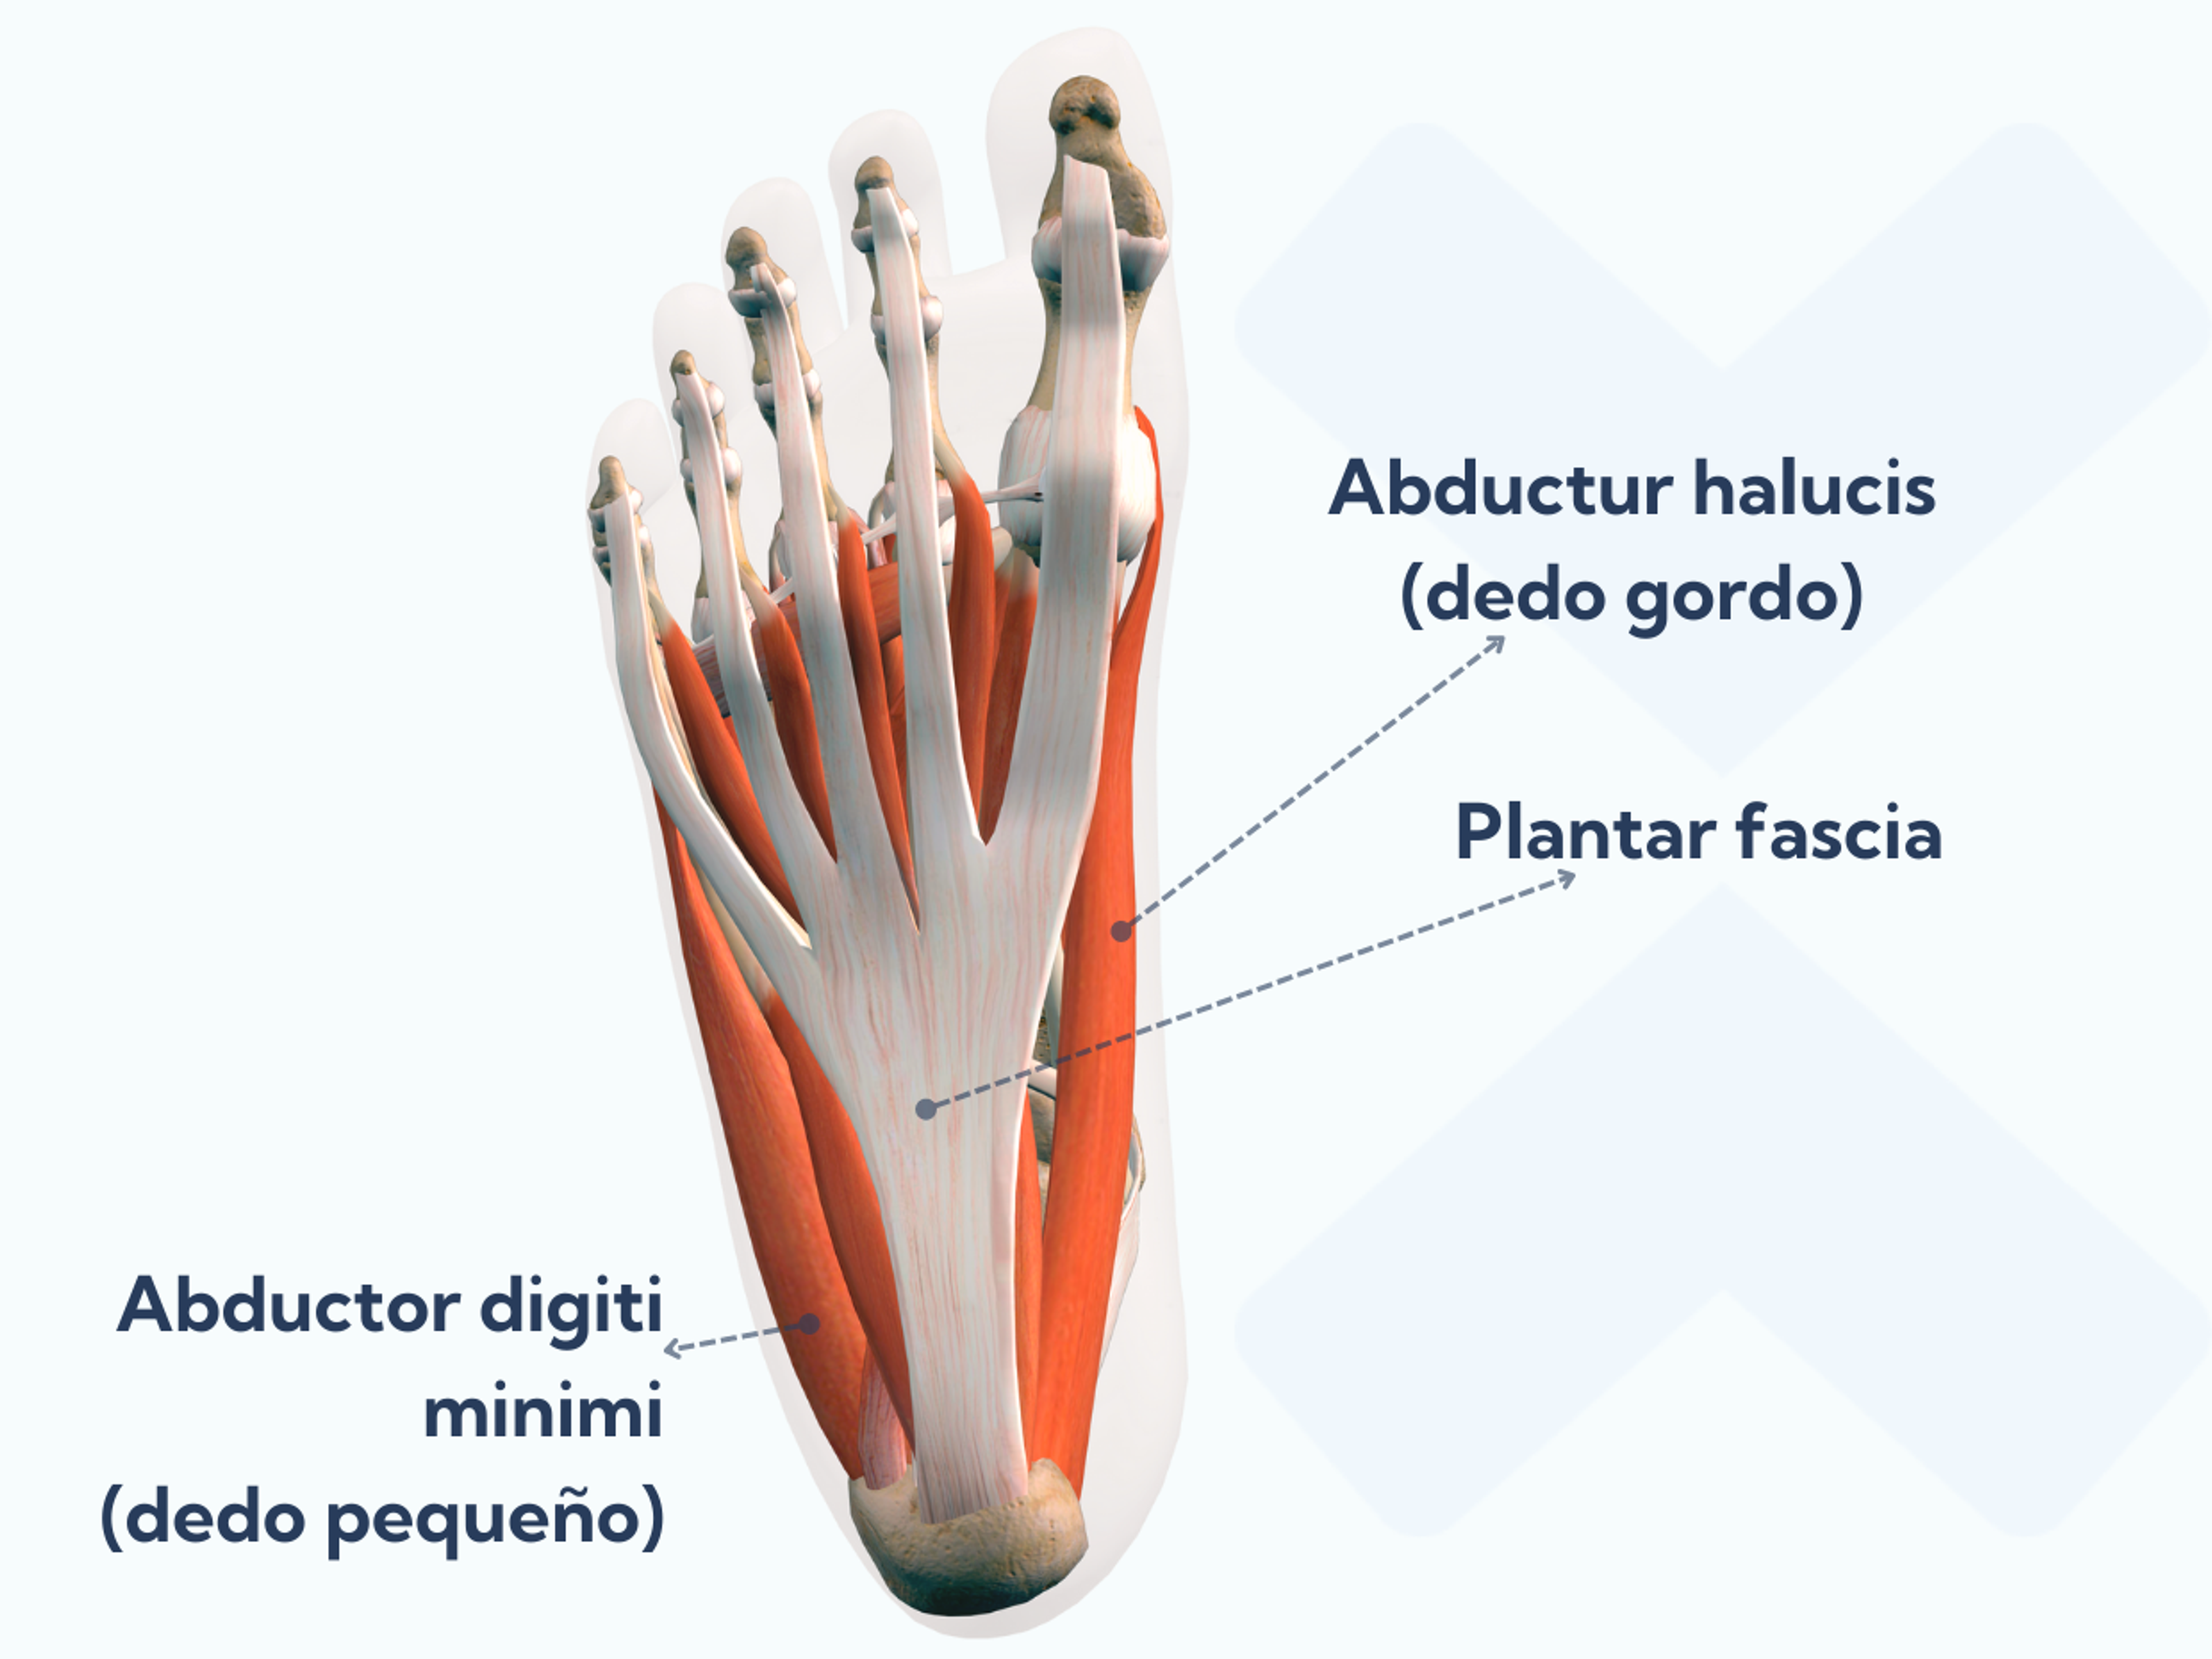 El abductor hallucis (del dedo gordo) y el abductor digiti minimi (del dedo pequeño) forman parte de la capa superficial de los músculos intrínsecos del pie.